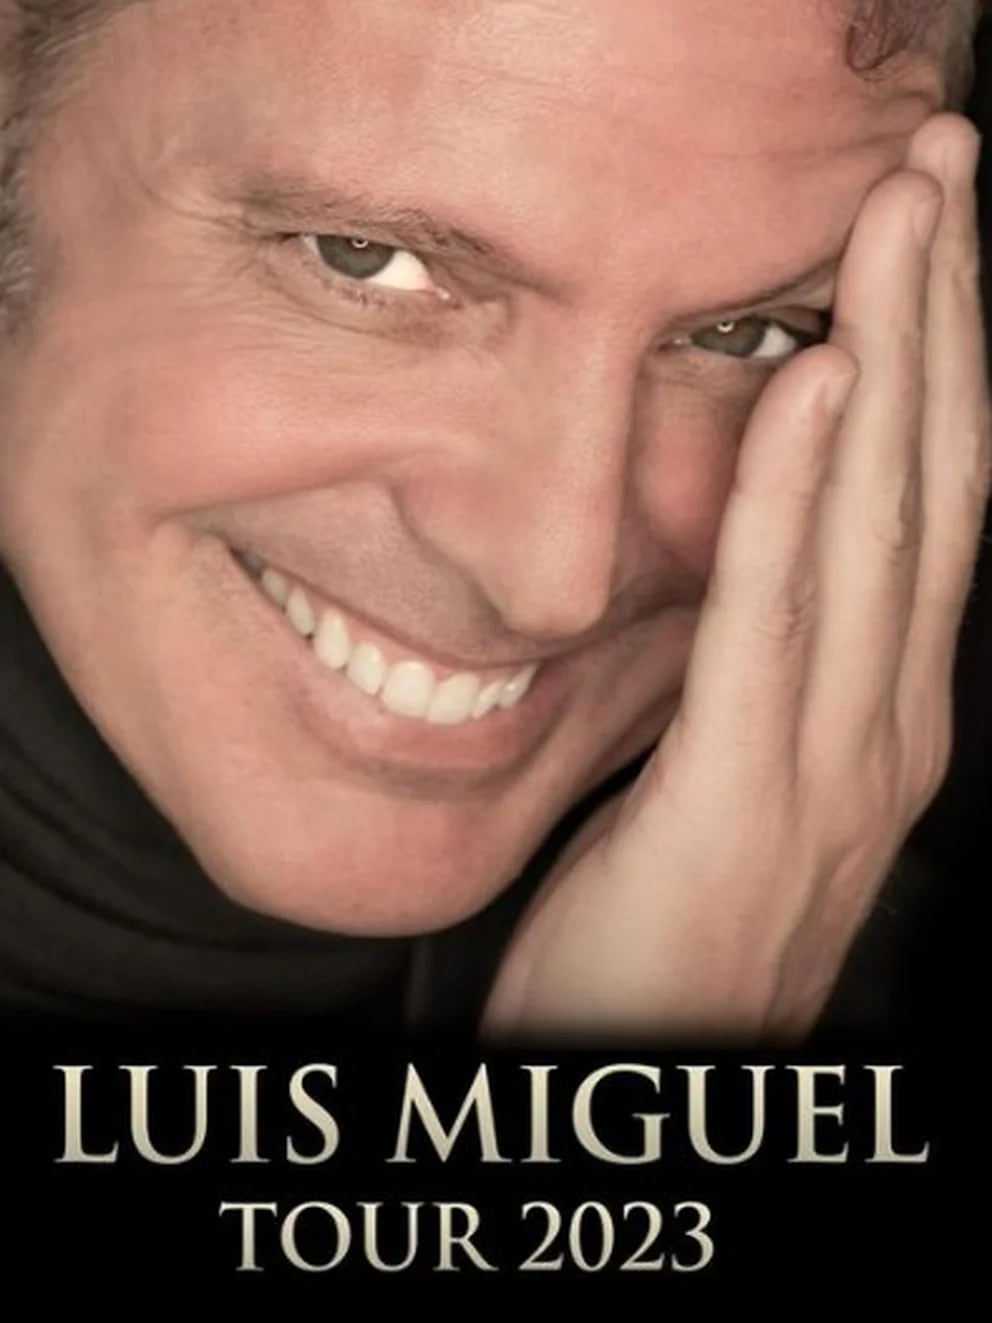 Luis Miguel inicia los preparativos para la gira mundial 2023.